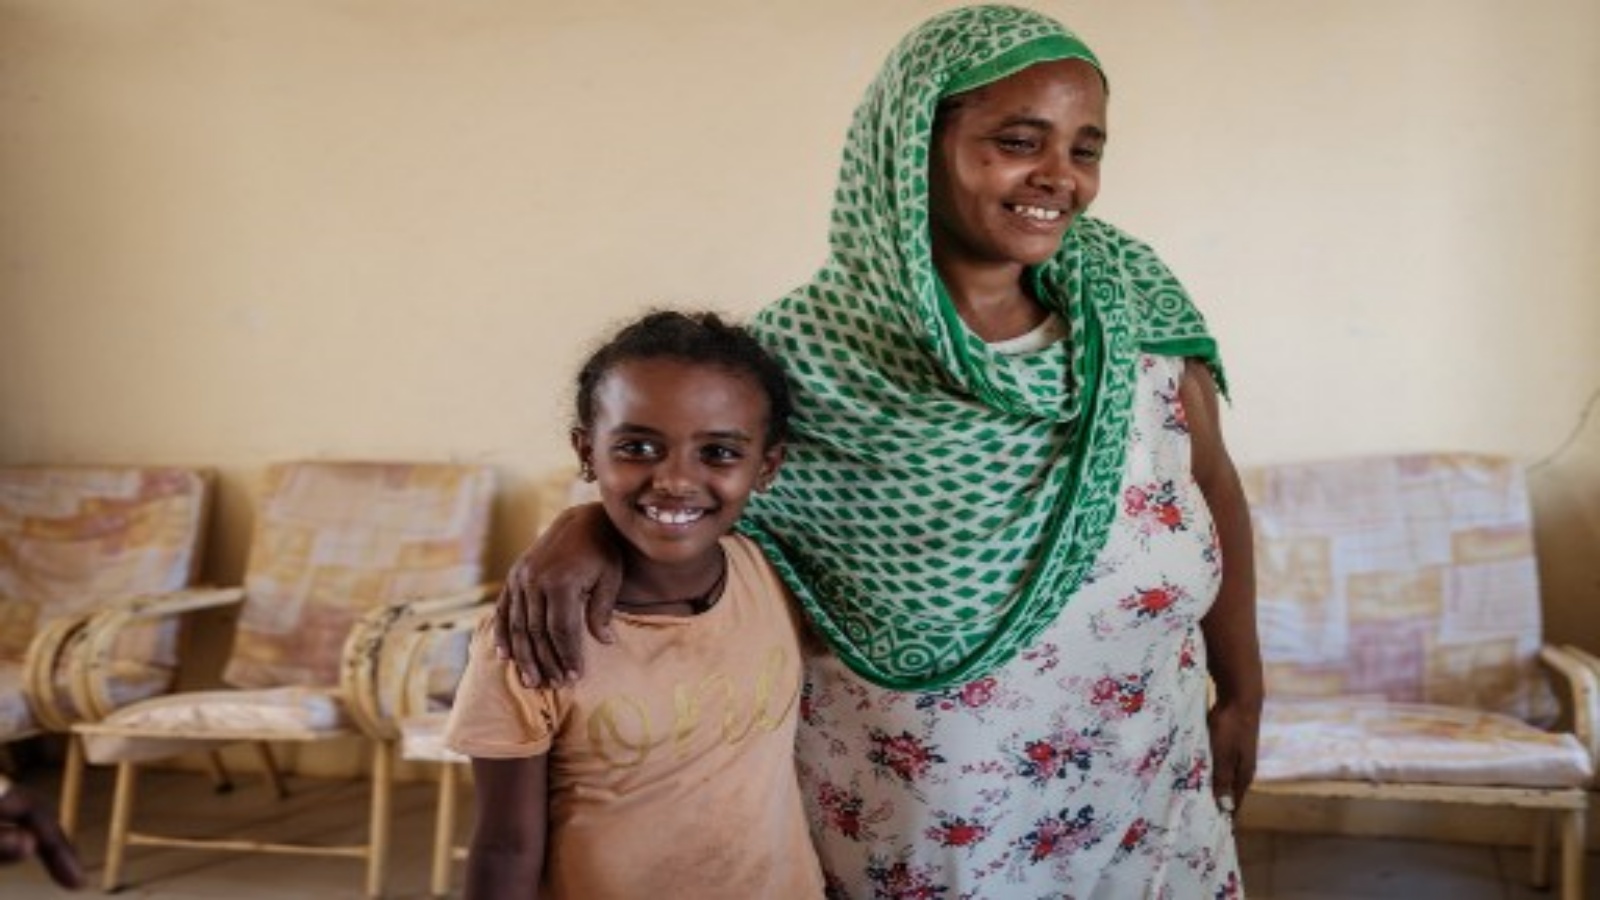 اللاجئة الإثيوبية شالوم (يسار) ، البالغة من العمر 7 سنوات ، تبتسم مع والدتها عطاش أثناء لم شملهما بعد شهر واحد من الانفصال أثناء الهروب من صراع تيغراي الإثيوبي في مركز استقبال الحدود في حمداييت ، شرق السودان ، في 8 ديسمبر ، 2020.